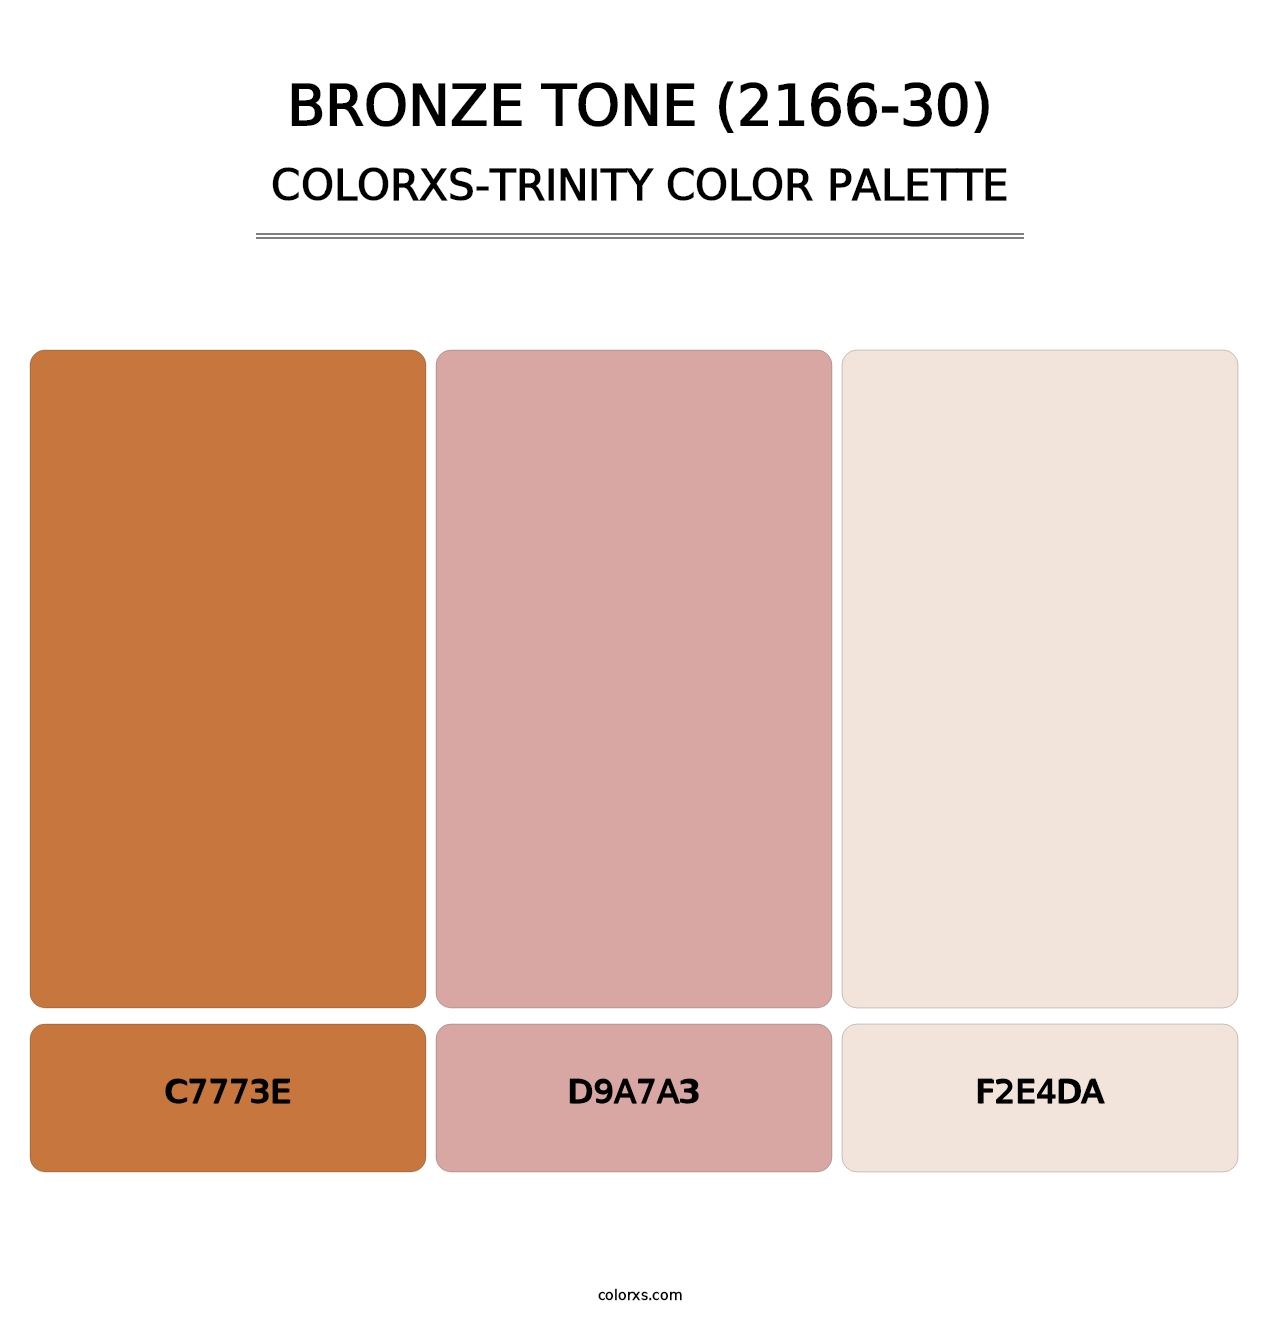 Bronze Tone (2166-30) - Colorxs Trinity Palette